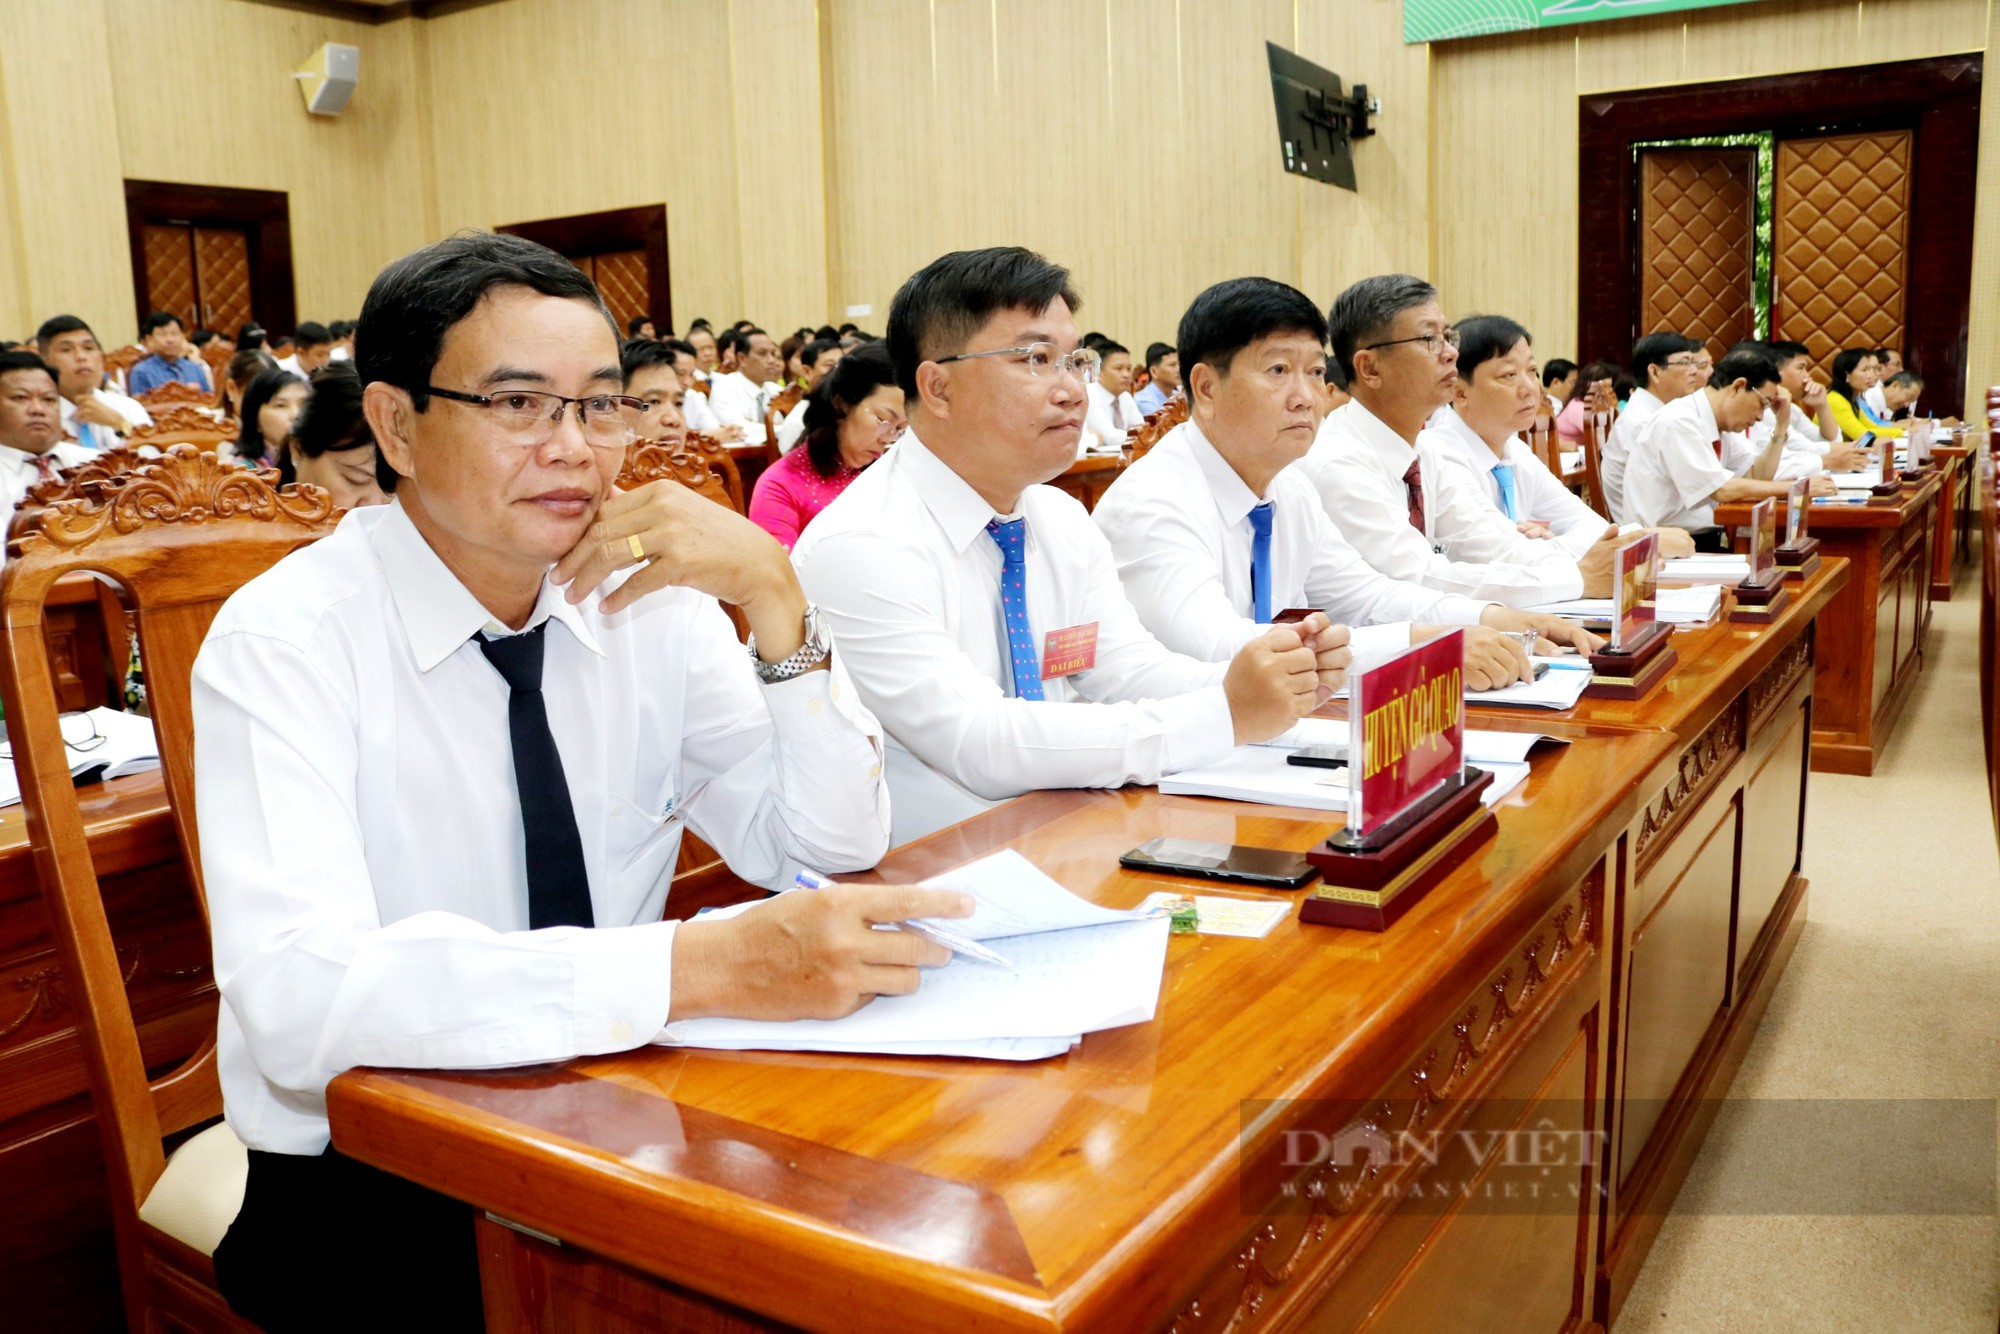 Đại hội đại biểu HND tỉnh Kiên Giang khoá X: Bí thư Tỉnh uỷ, Phó Chủ tịch BCH HNDVN dự, chỉ đạo đại hội - Ảnh 8.